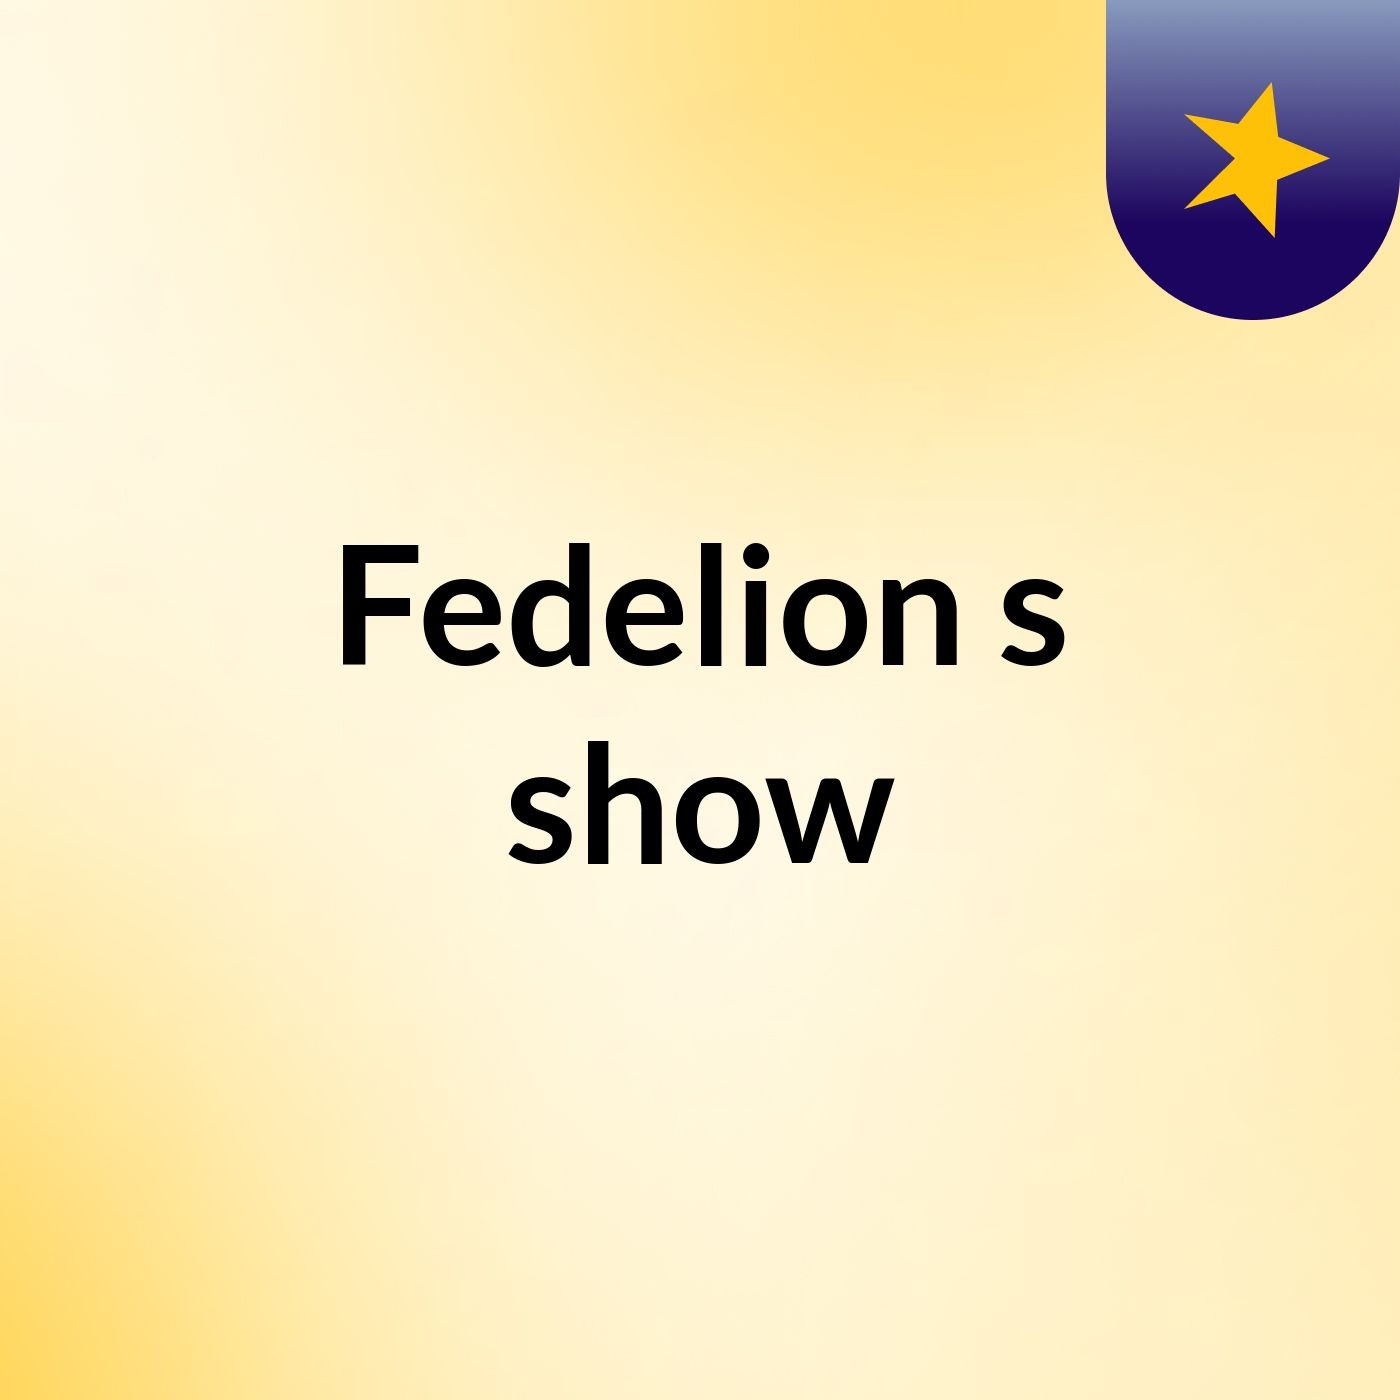 Fedelion's show